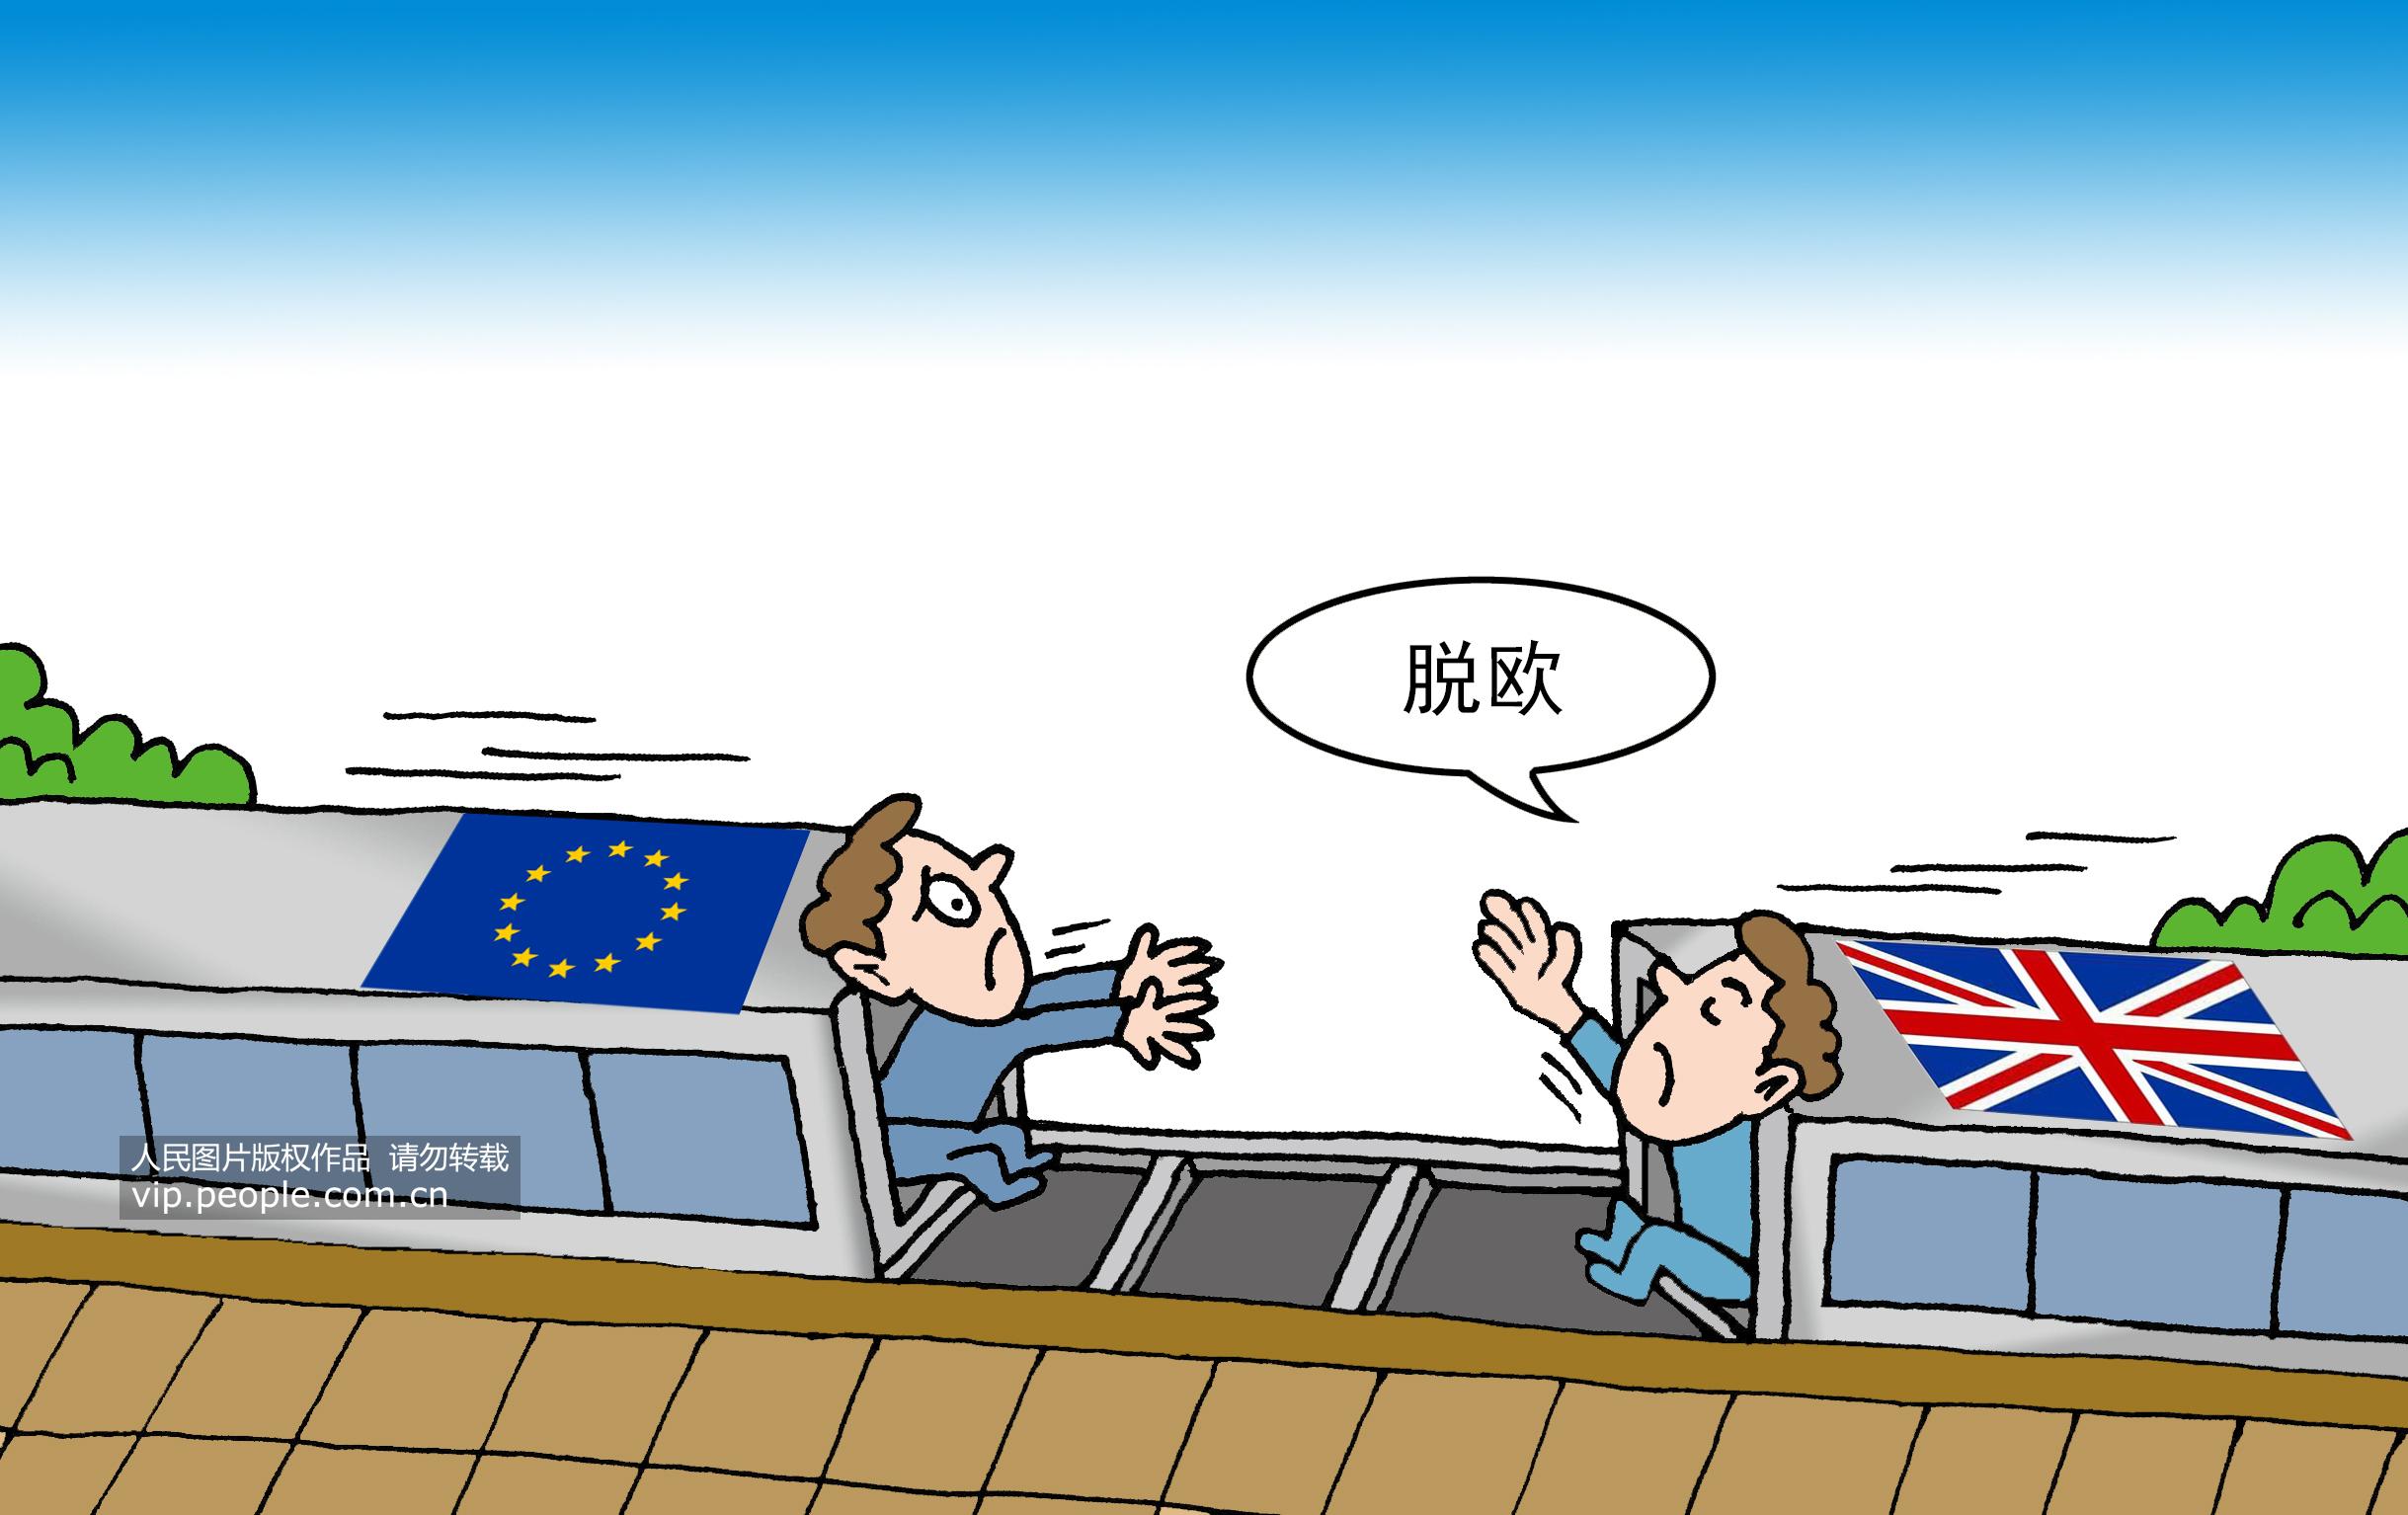 歐盟27國代表同意臨時執行歐英協議